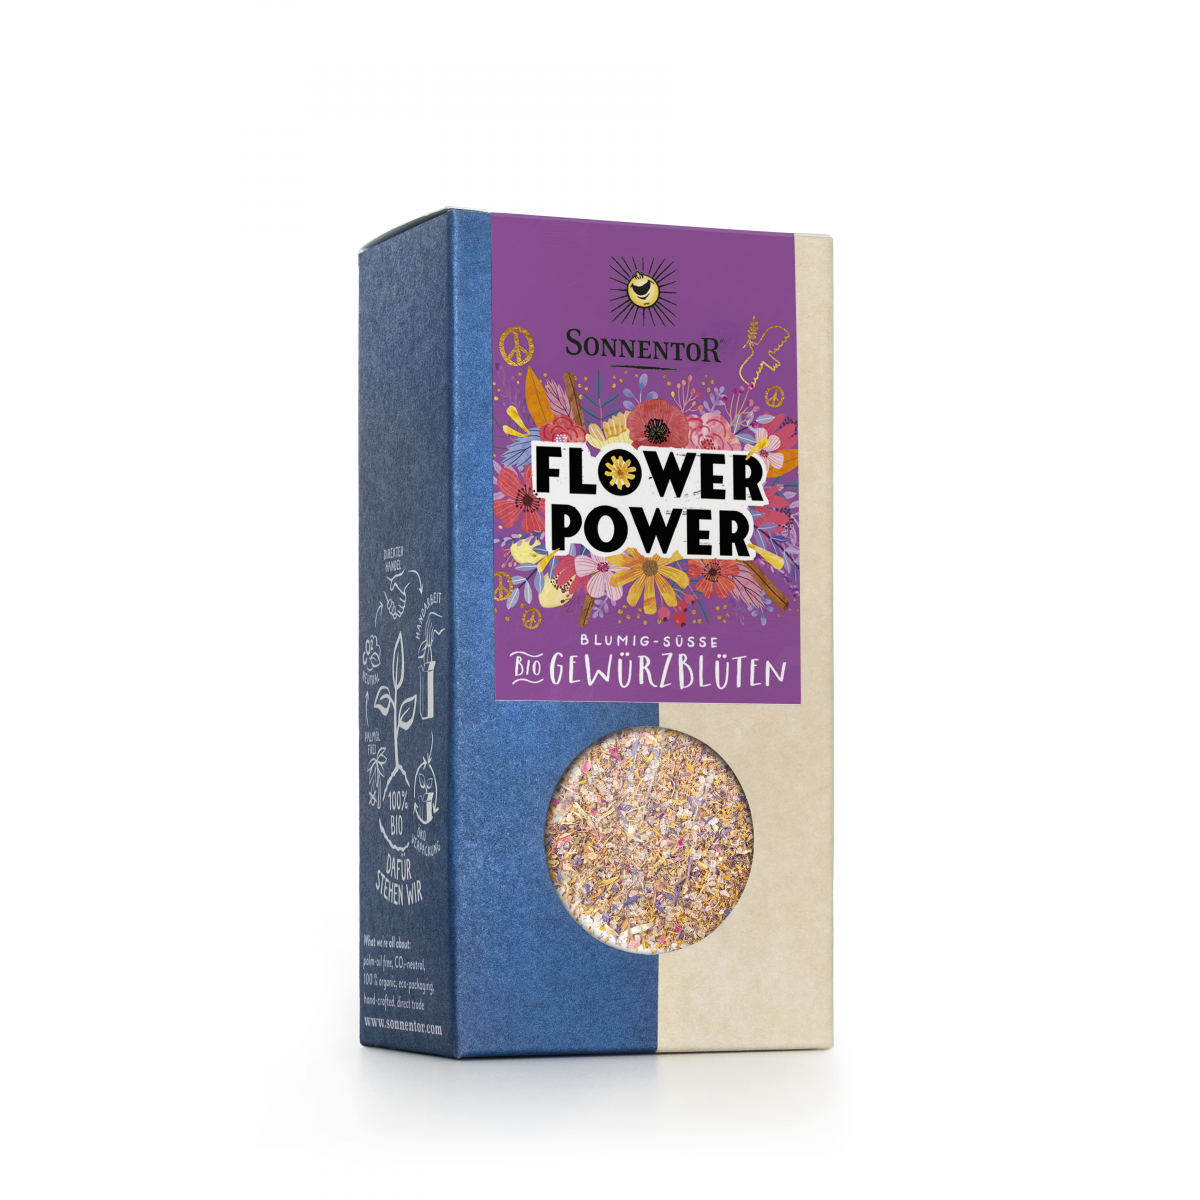 Flower Power Gewürz-Blüten-Zubereitung